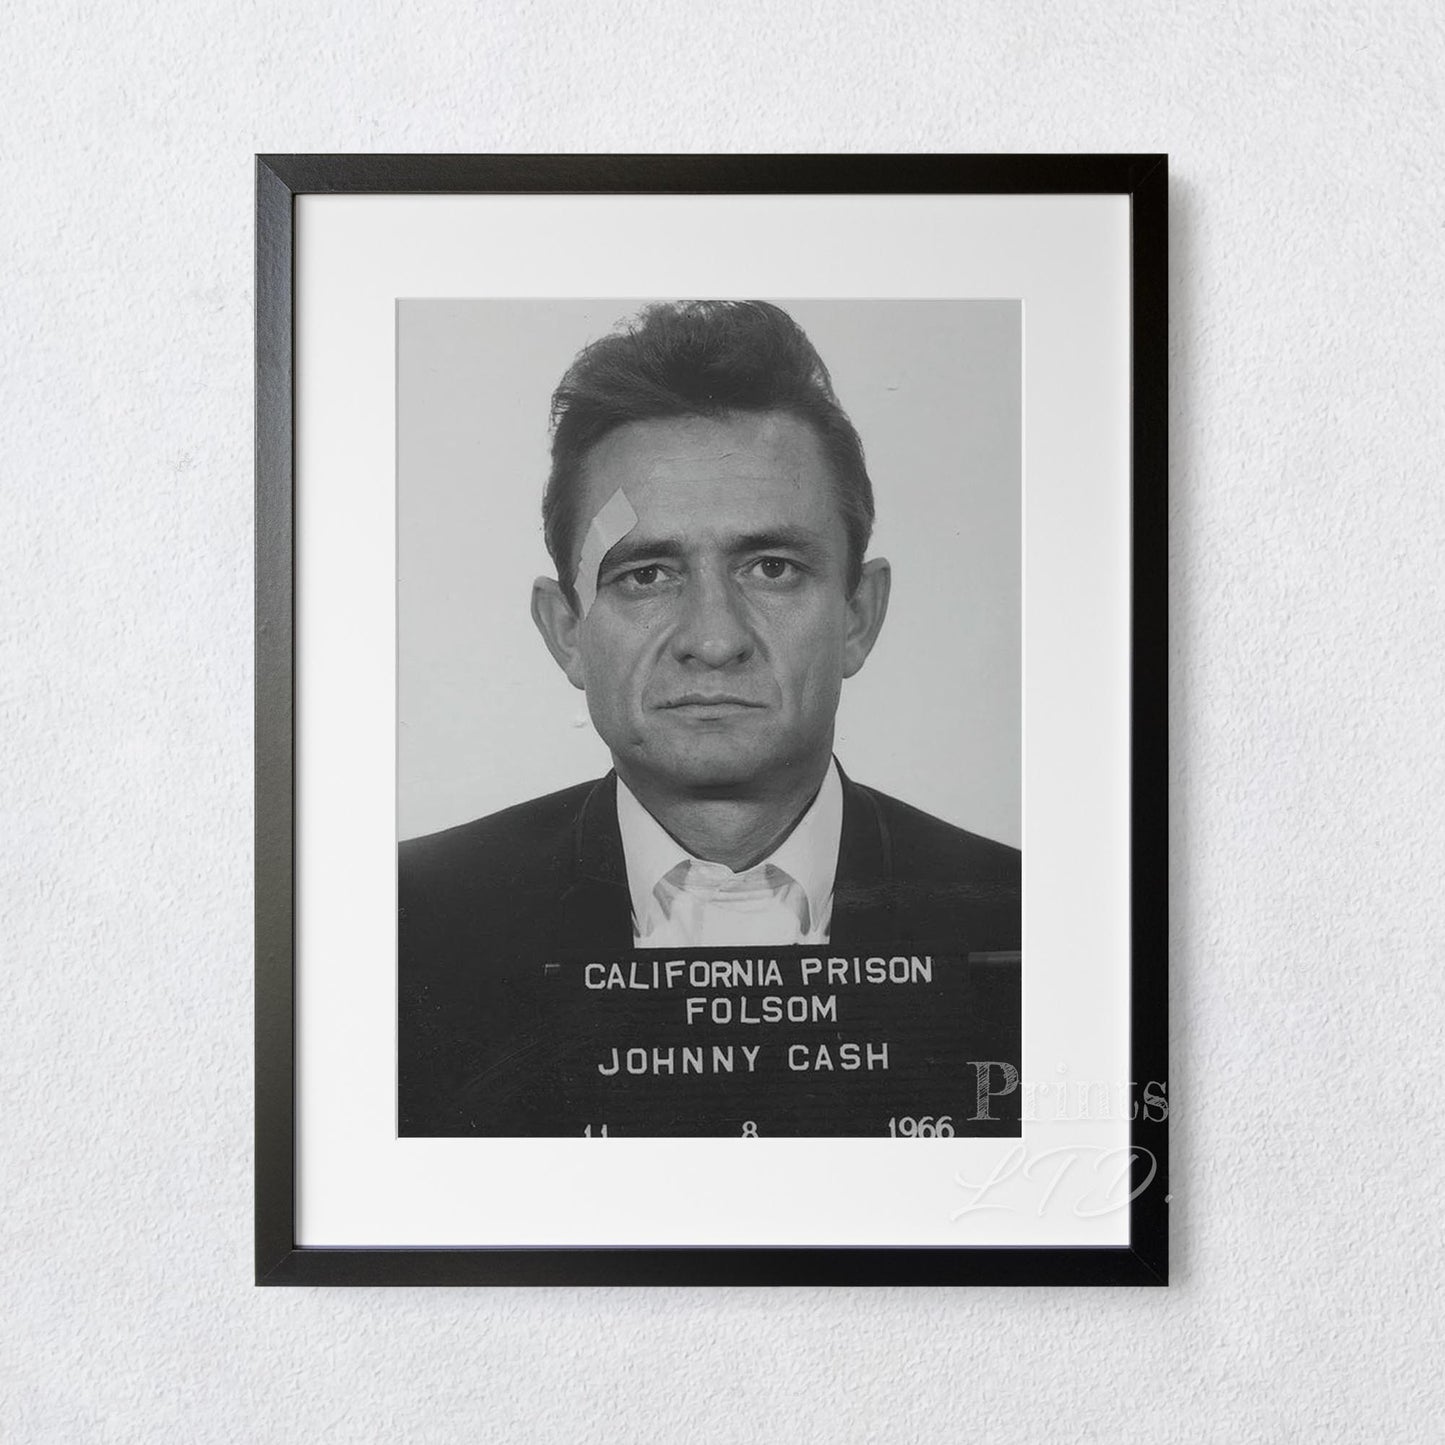 Johnny Cash Prison Mugshot